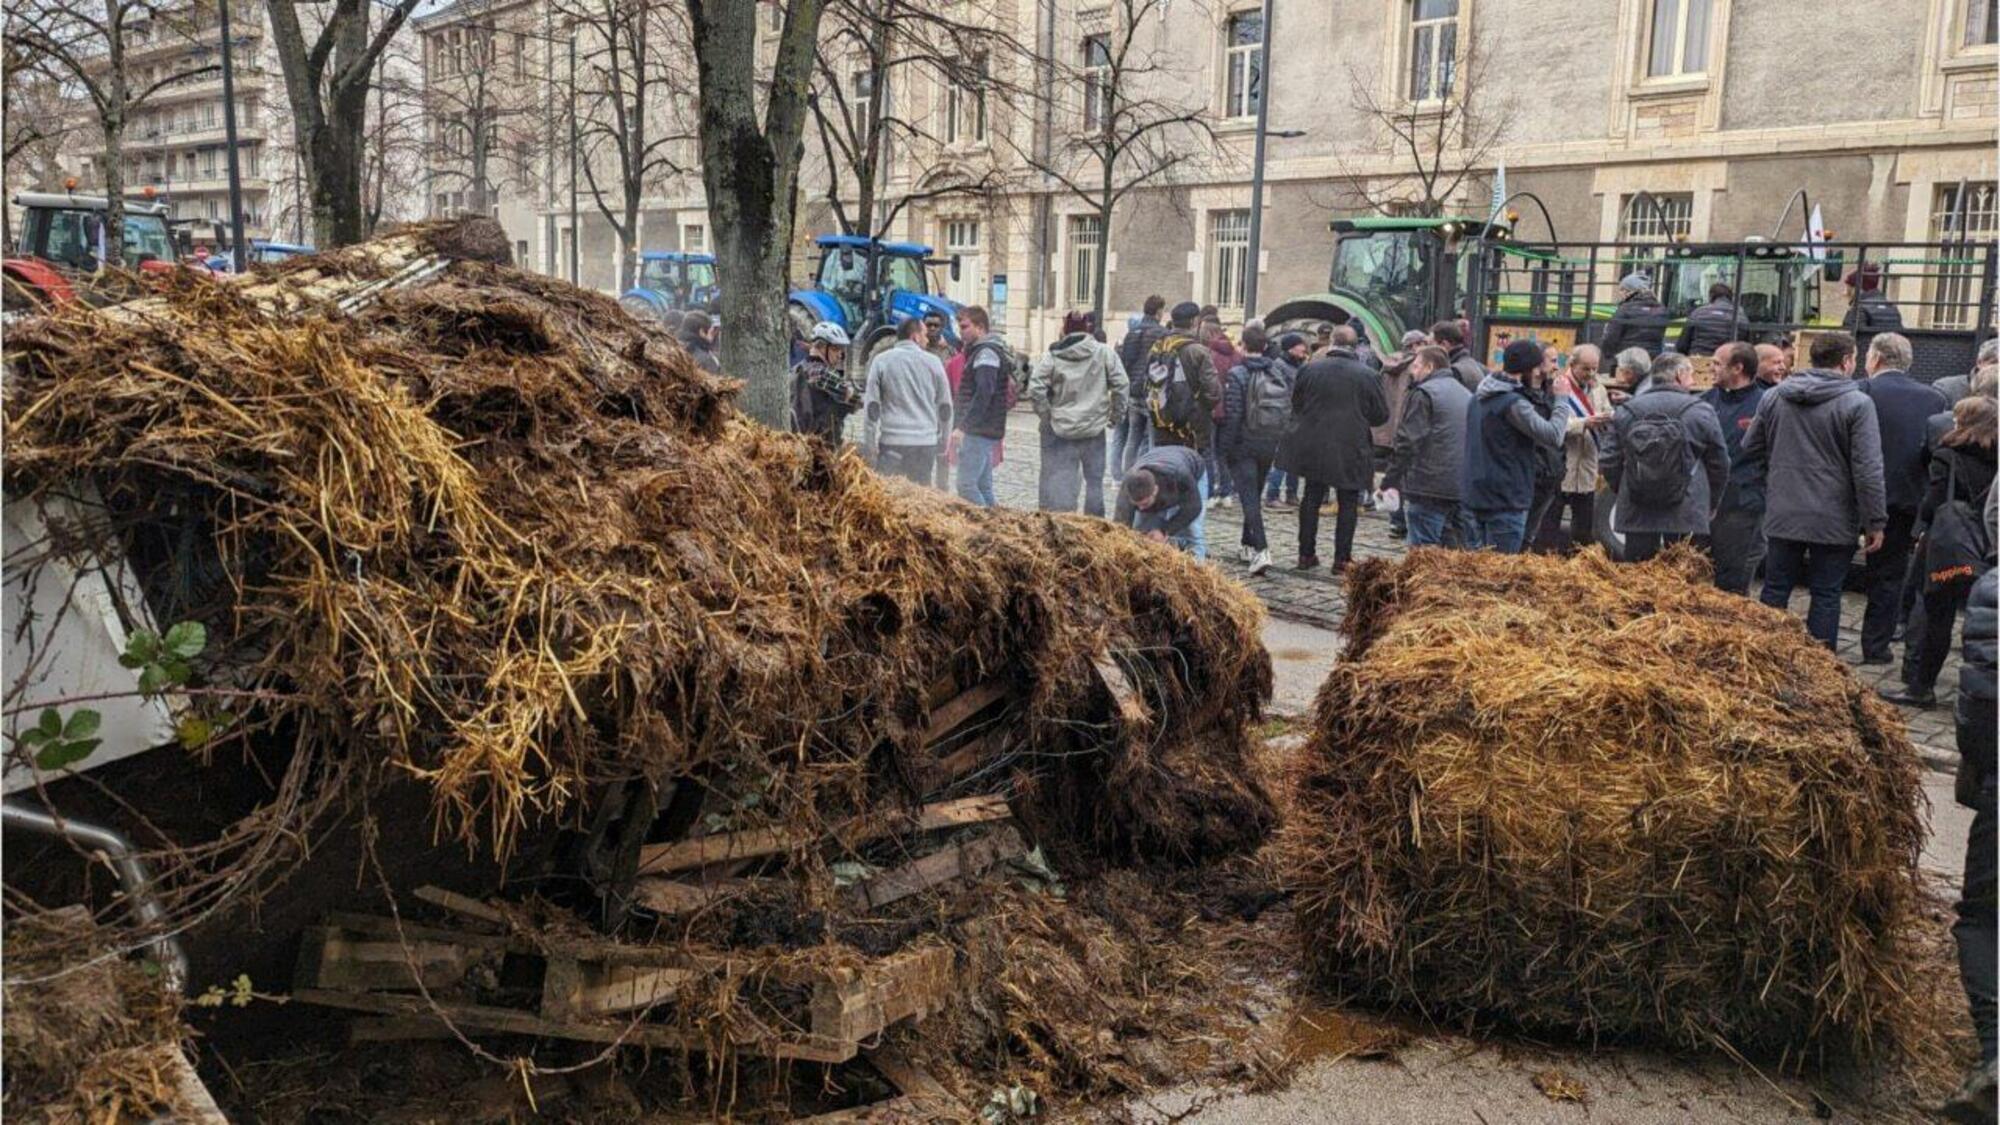 Immagini dalle protesta in Francia, dove gli agricoltori hanno bloccato le strade con i propri trattori, riversando fango e letame